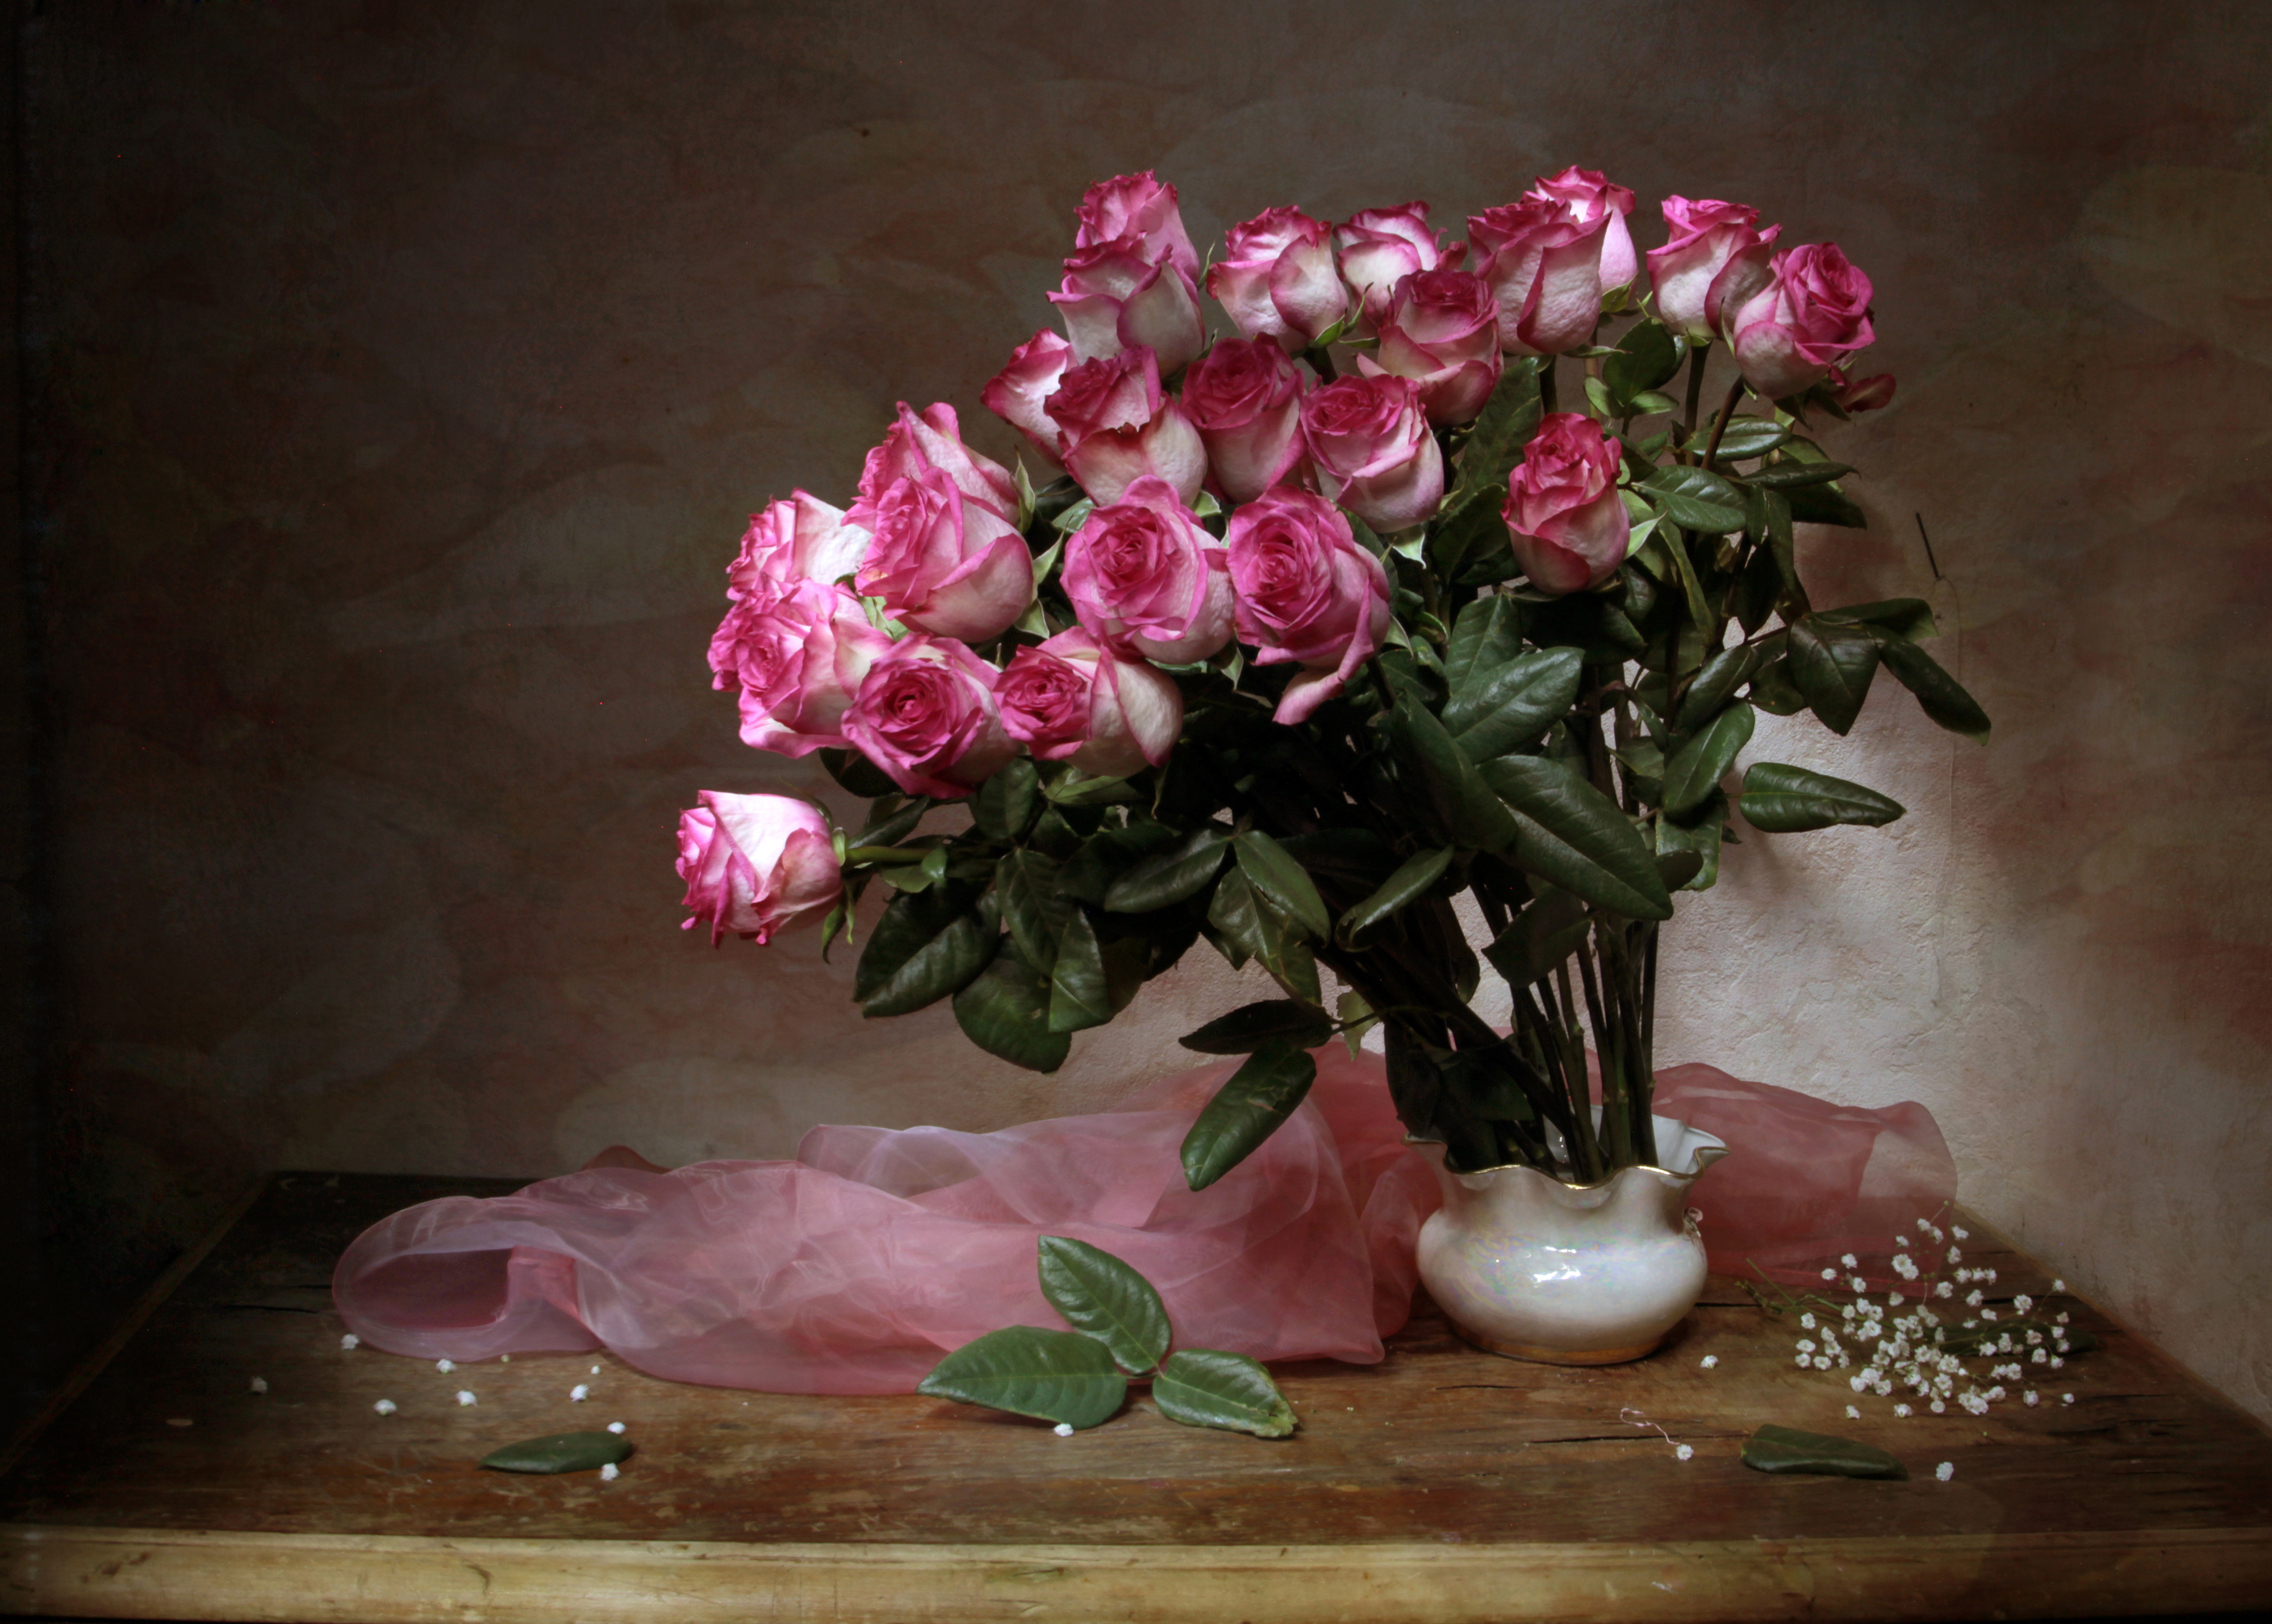 Картинка с цветами на столе. Цветы в вазе. Розы в вазе. Букеты в вазах. Букет цветов в вазе.